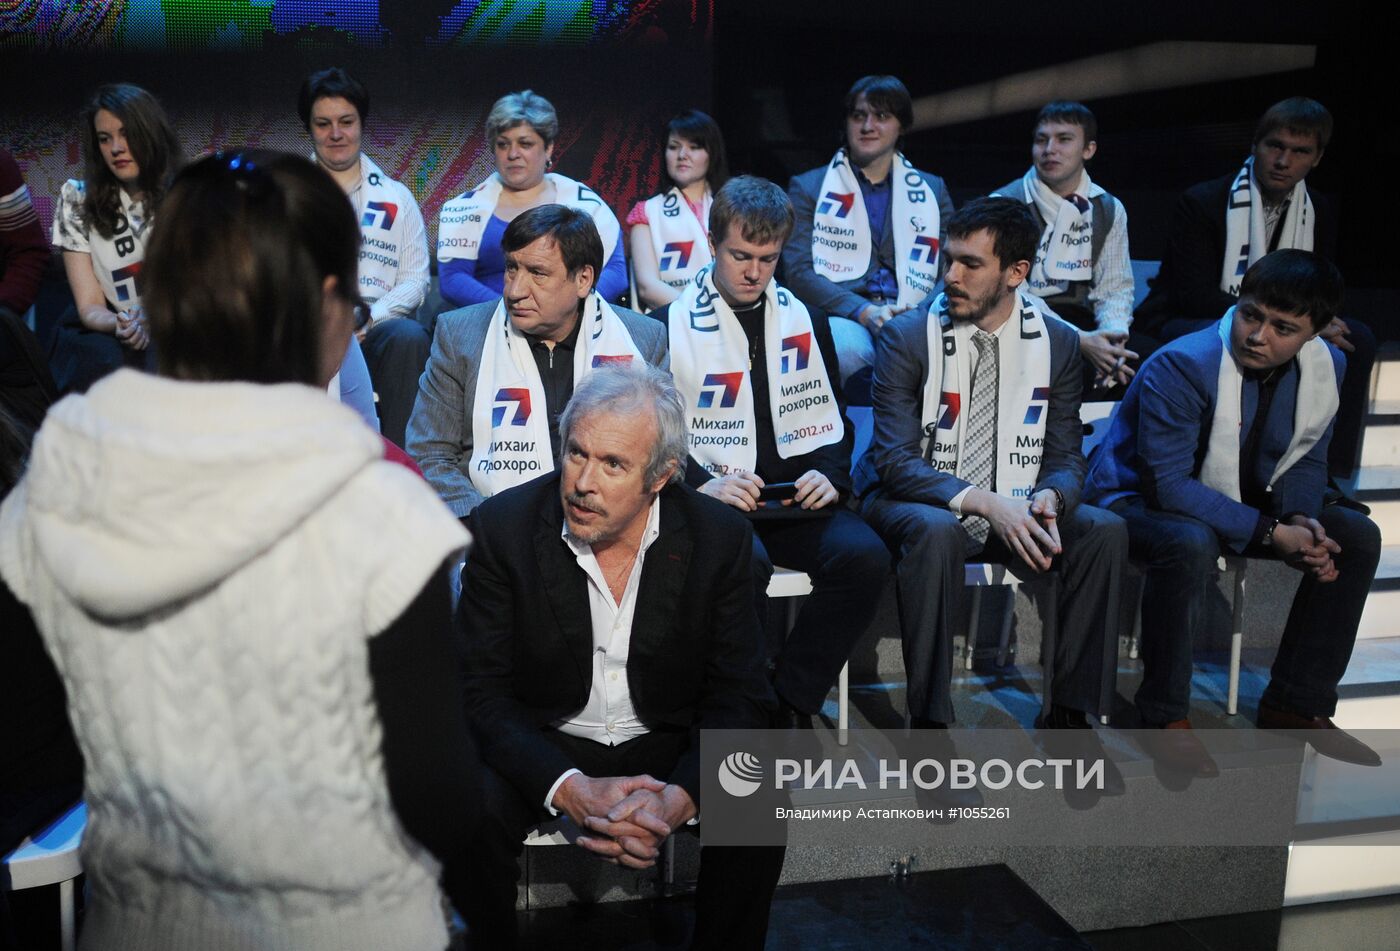 Дебаты между кандидатами в президенты РФ